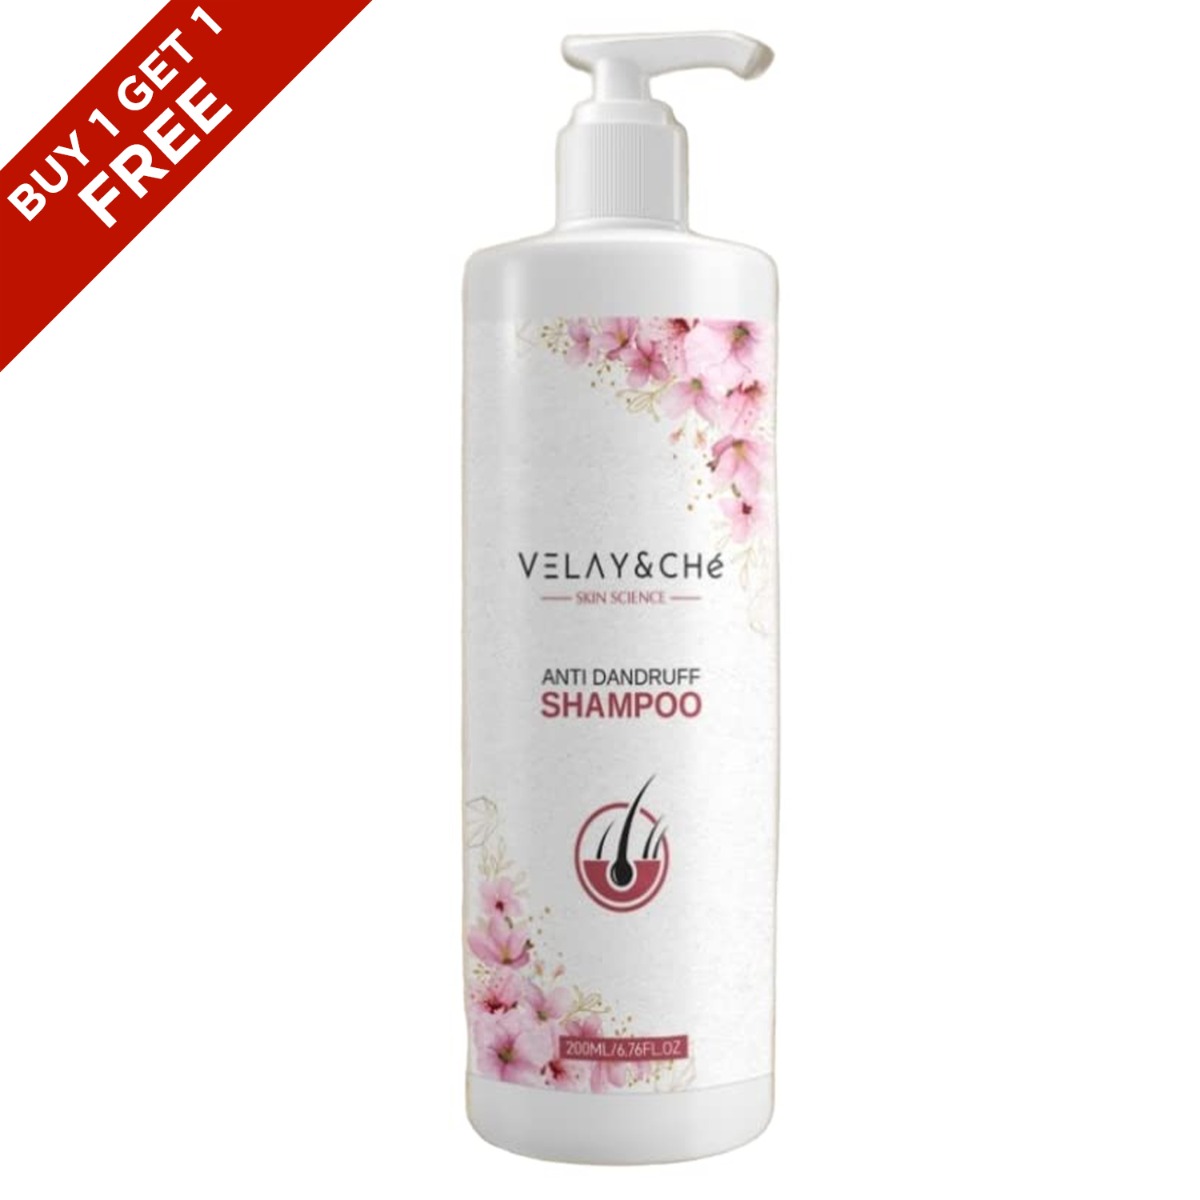 Velay & Che Anti Dandruff Shampoo, 200ml